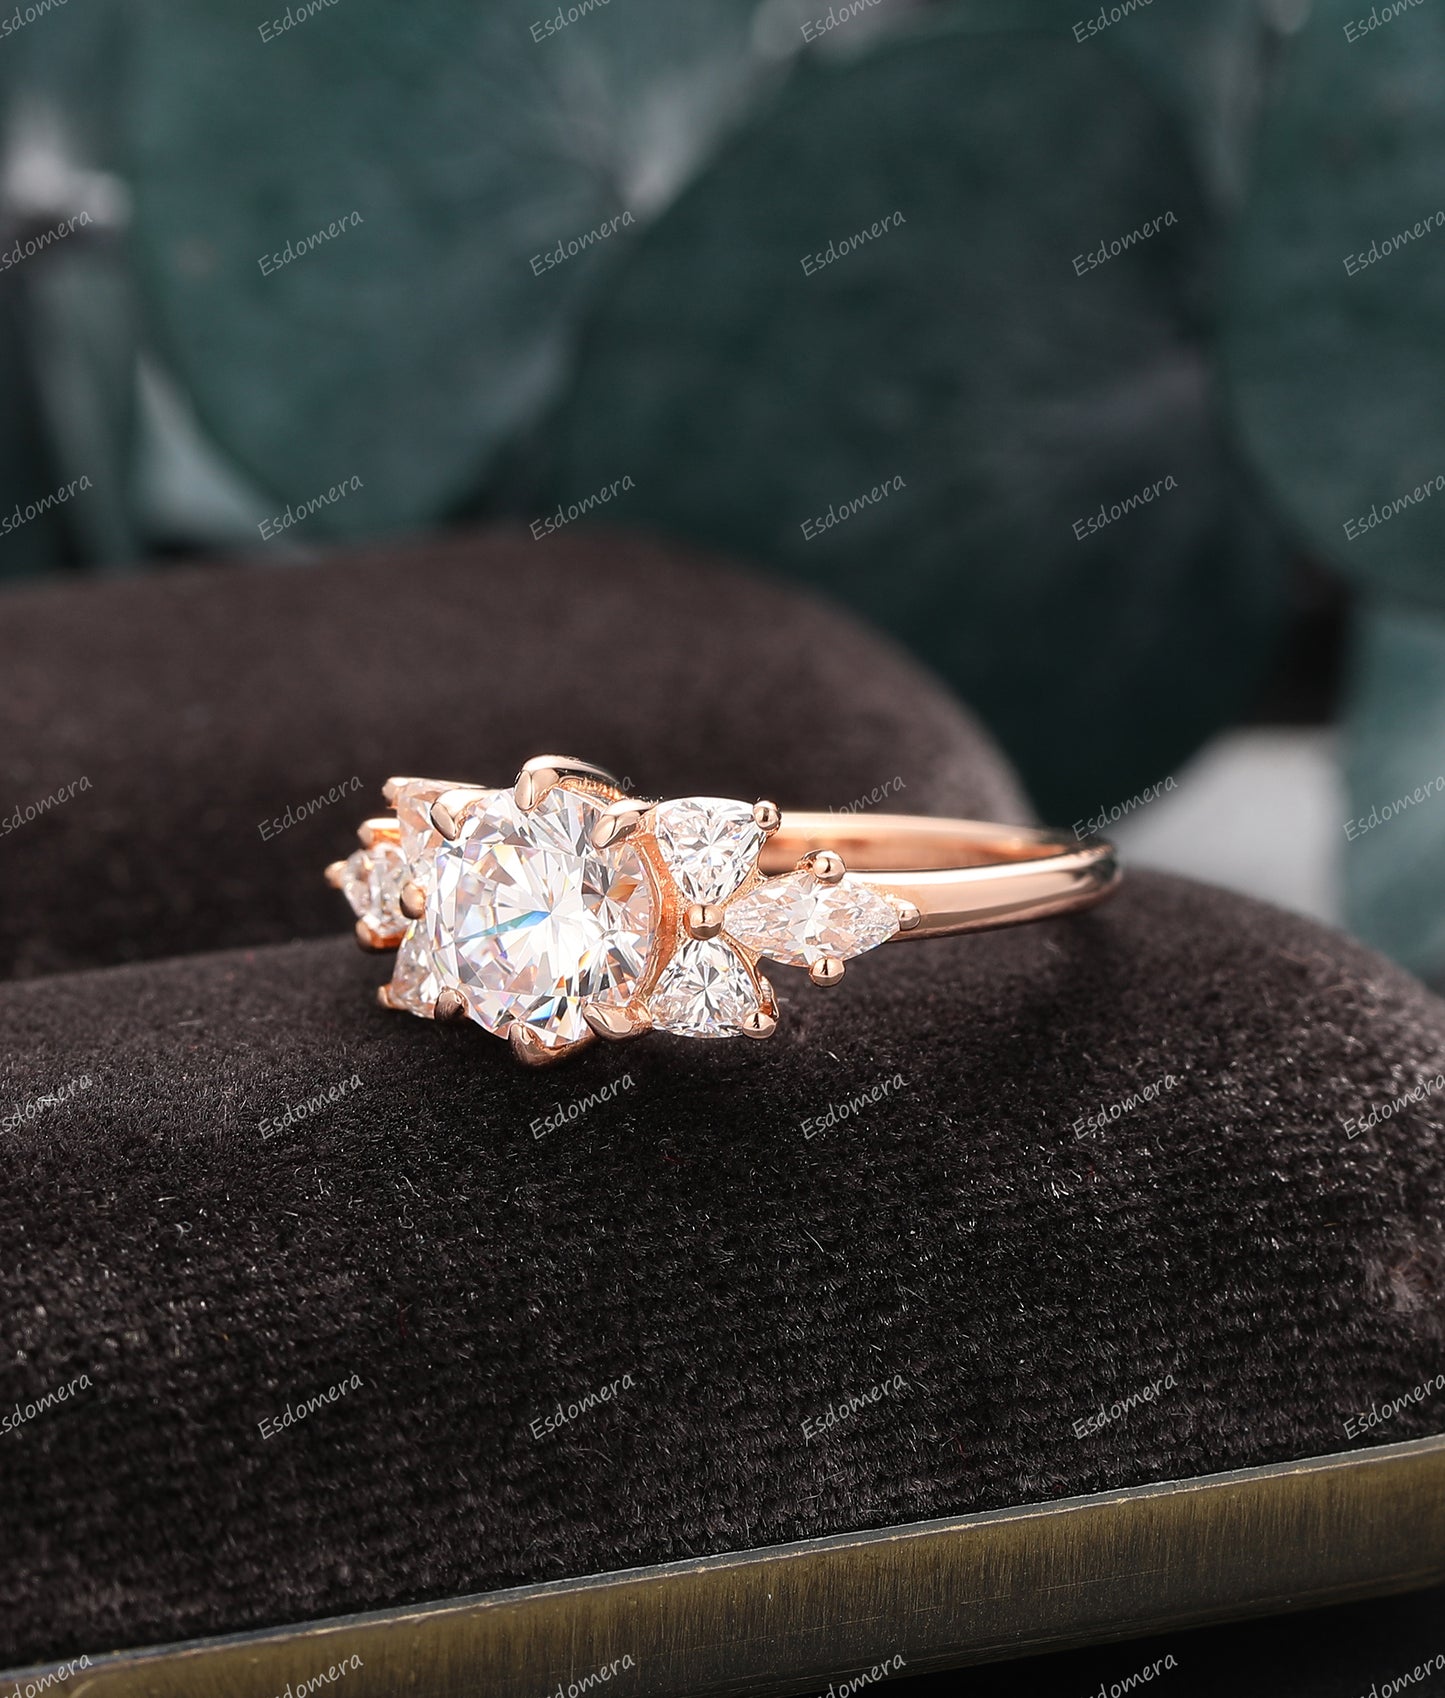 14k Rose Gold Promise Ring, Round 1.25CT Moissanite Engagement Ring, 7 Stone Moissanite Ring, Dainty Ring For Her